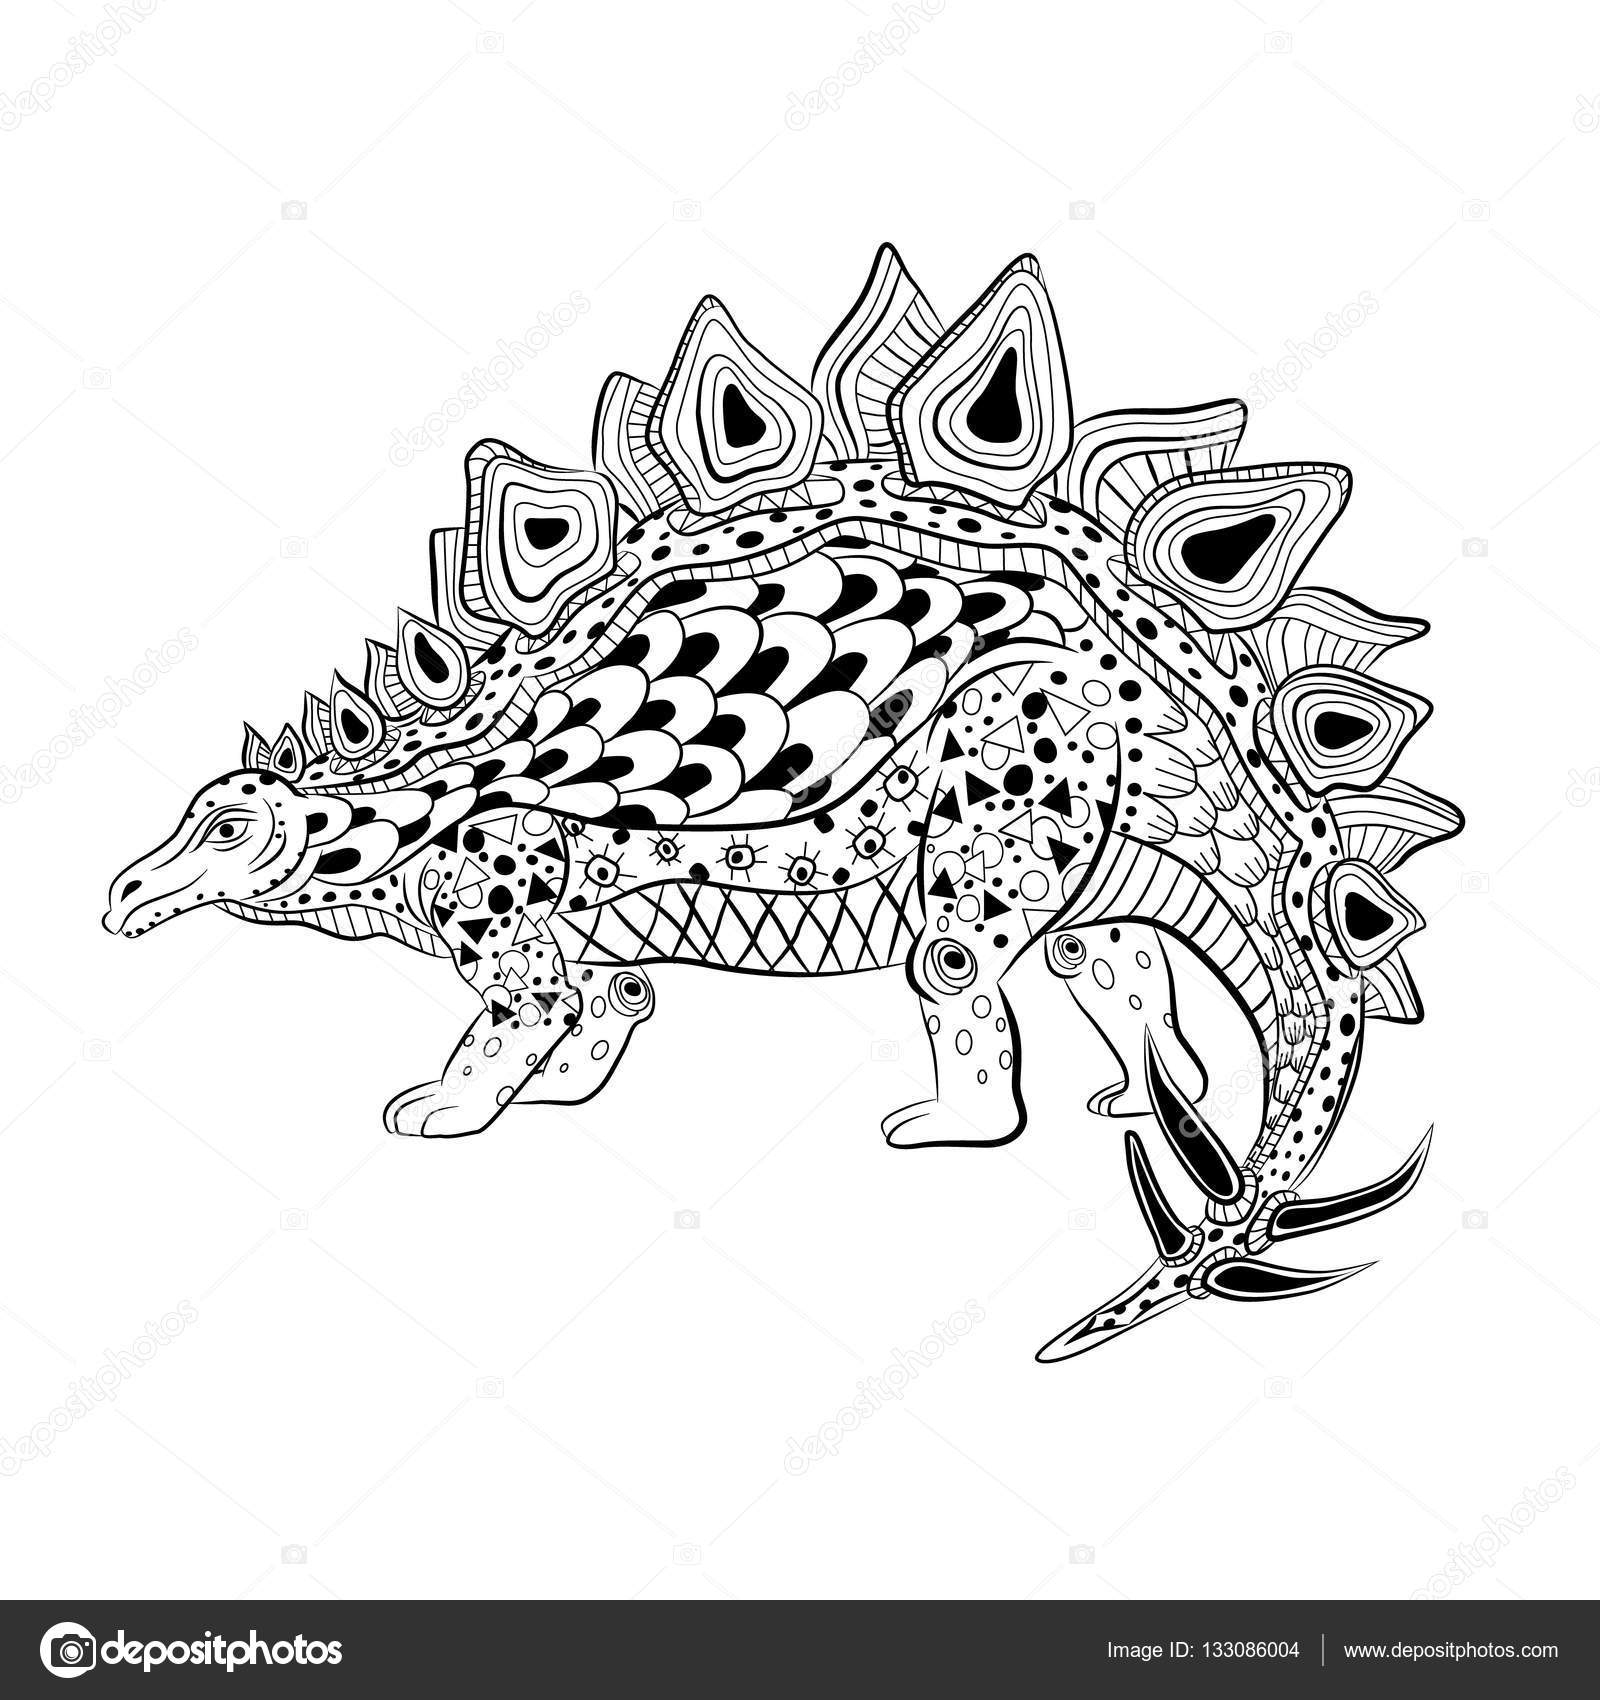 Stegosaurus reptile préhistorique Anti stress Coloring Book pour les adultes — Vector by vitasunny